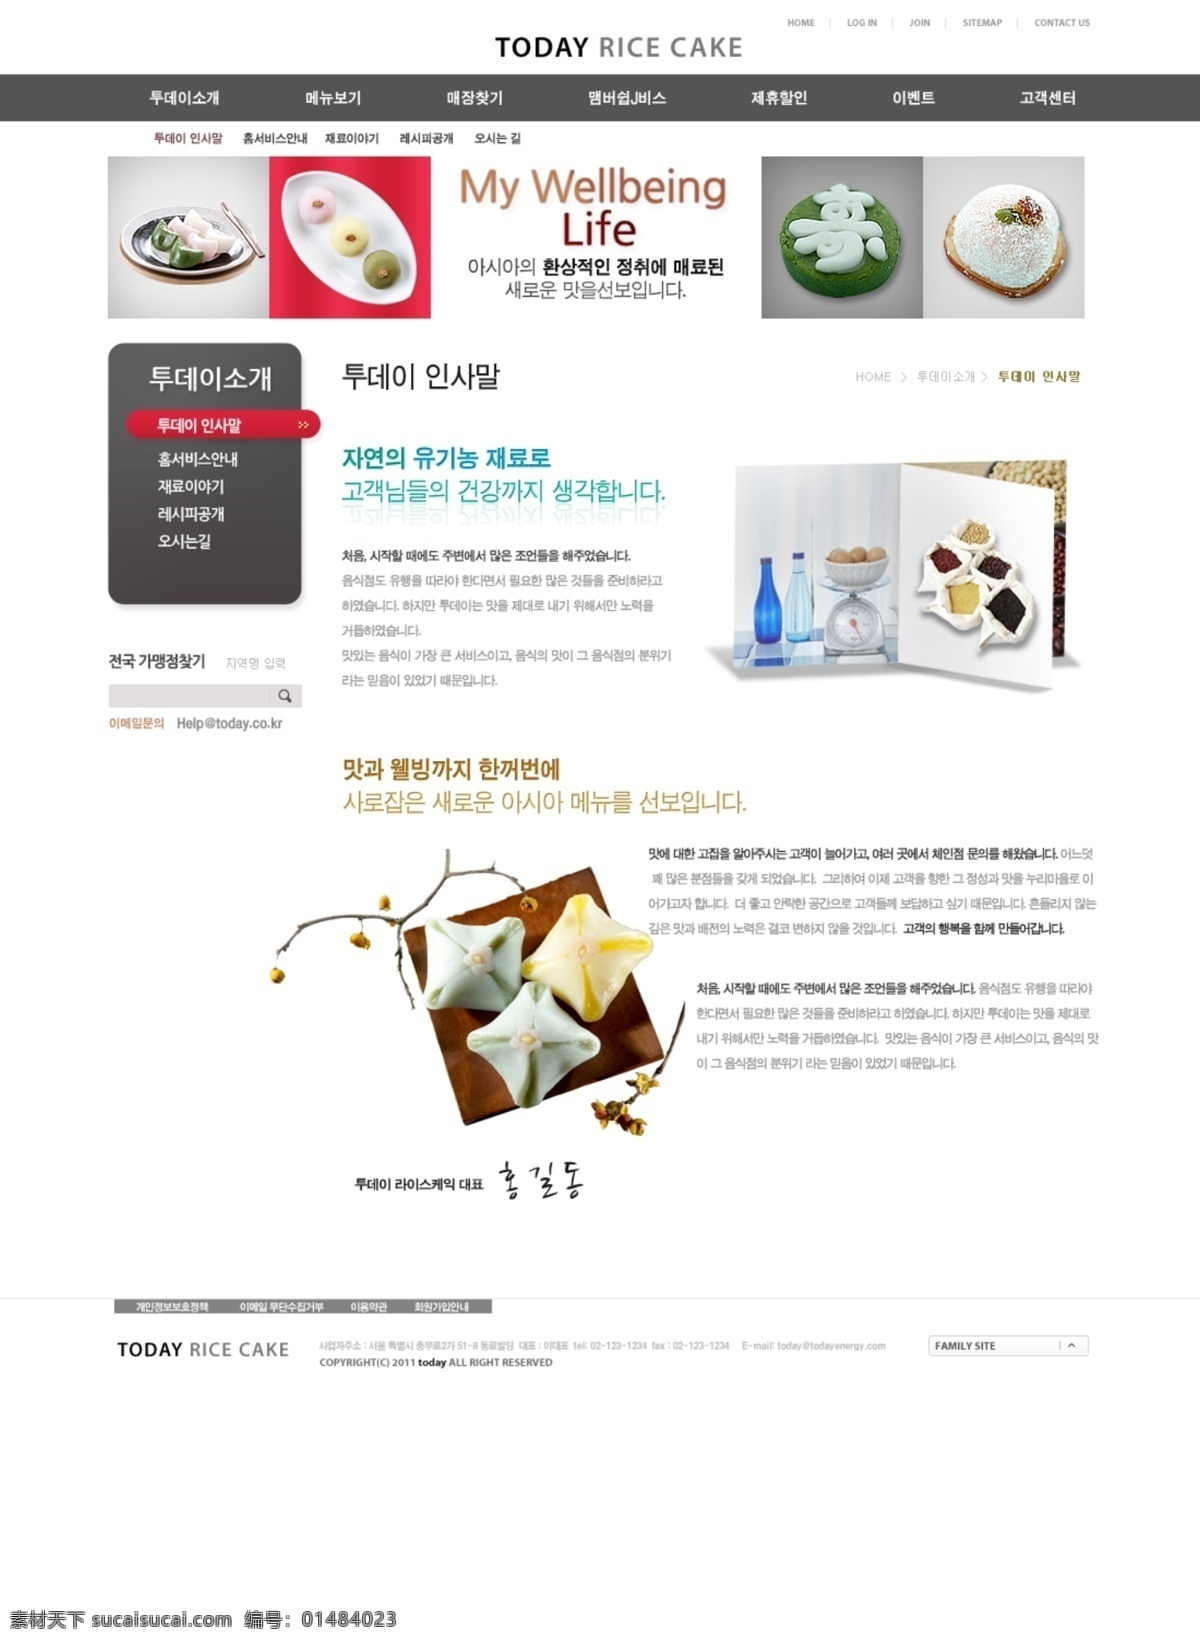 韩国 美食 网站 网页模板 网页素材 模板 个人网站模板 企业网站 模板下载 模板网站界面